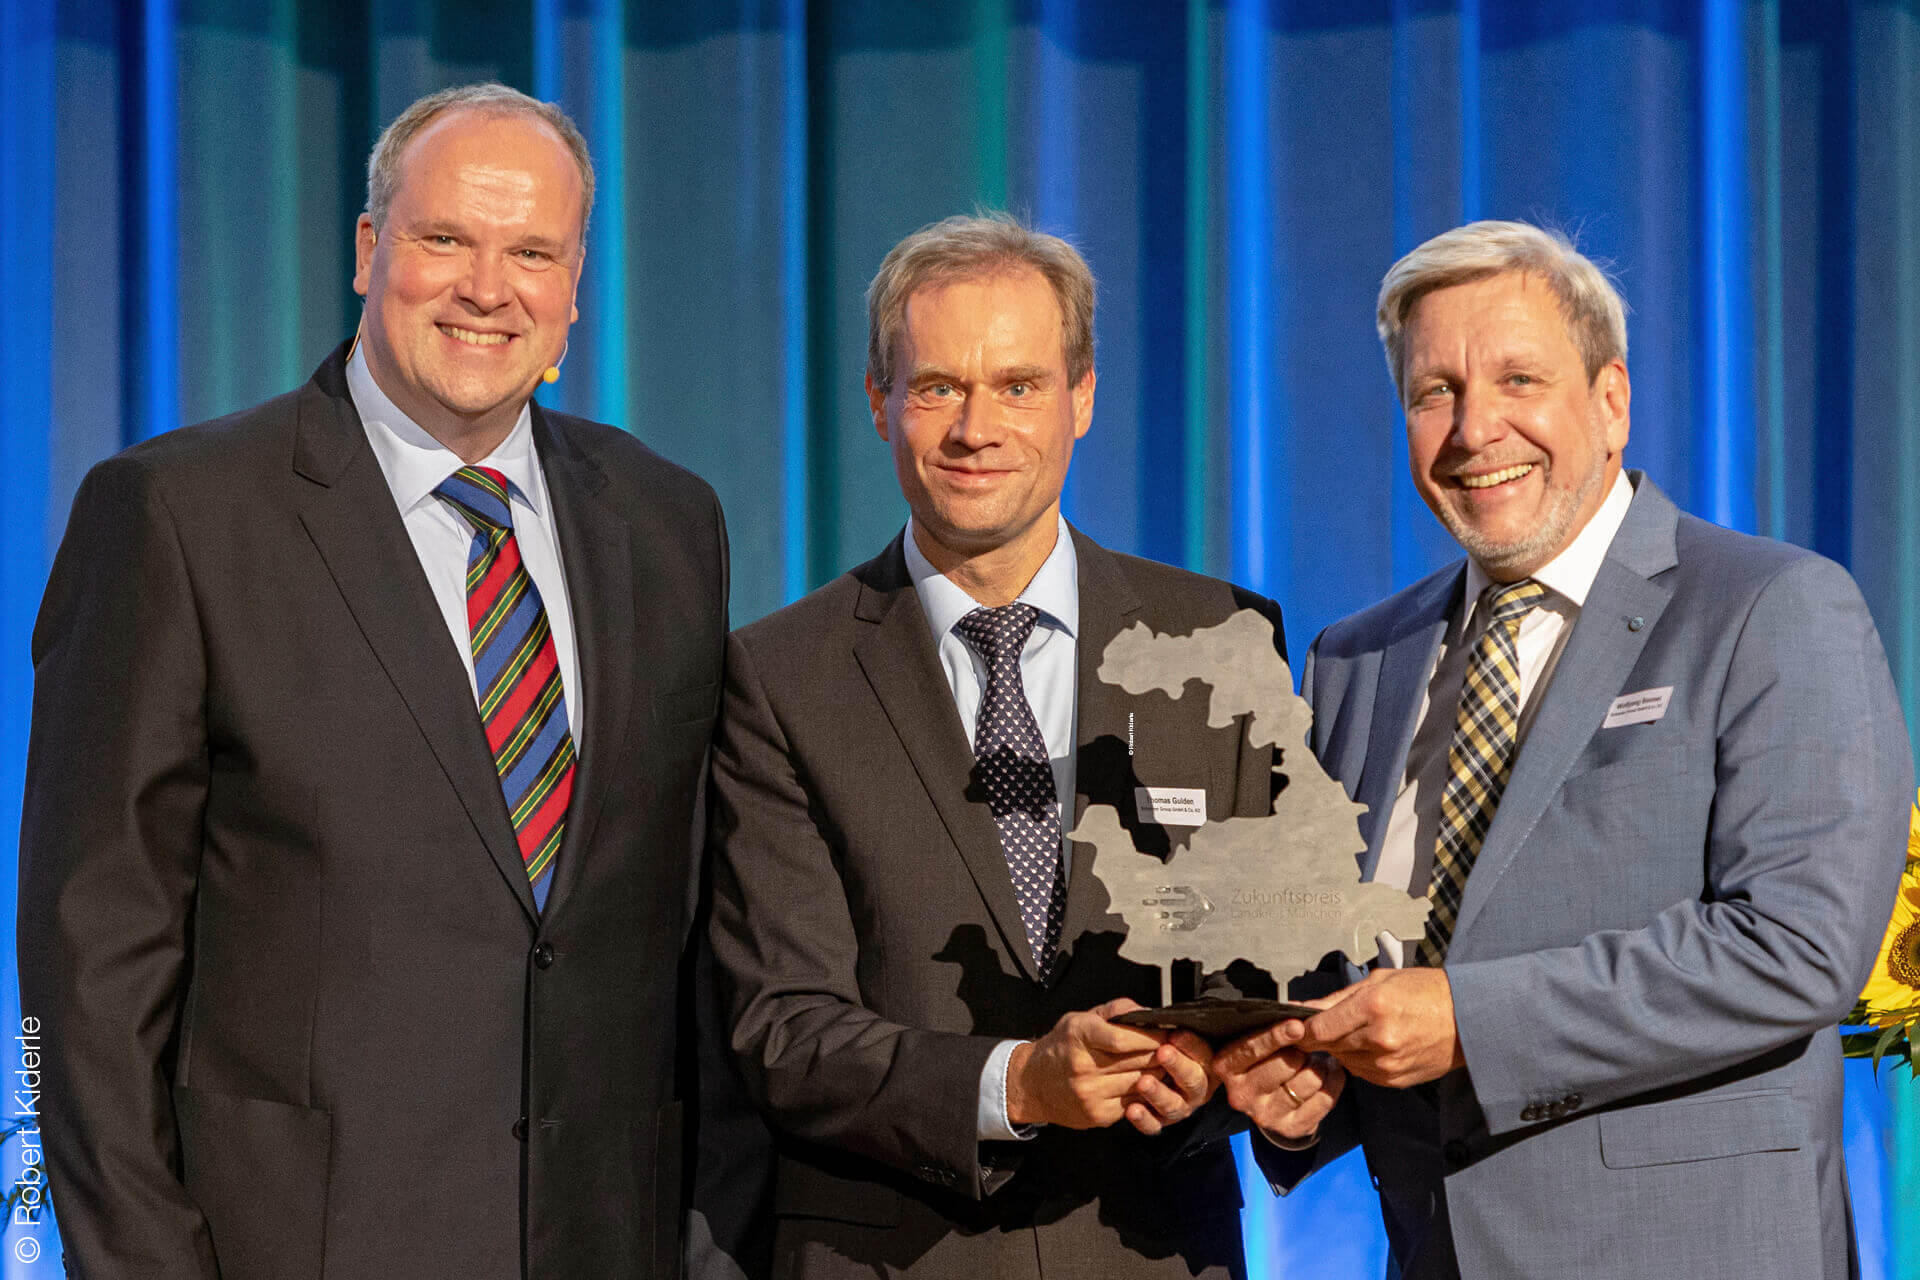 Feierliche Auszeichnung: Landrat Christoph Göbel überreicht den Zukunftspreis an Dr. Thomas Gulden (Leiter Umwelt- und Arbeitsschutz) und Wolfgang Bonnet (Leiter Facility Management).